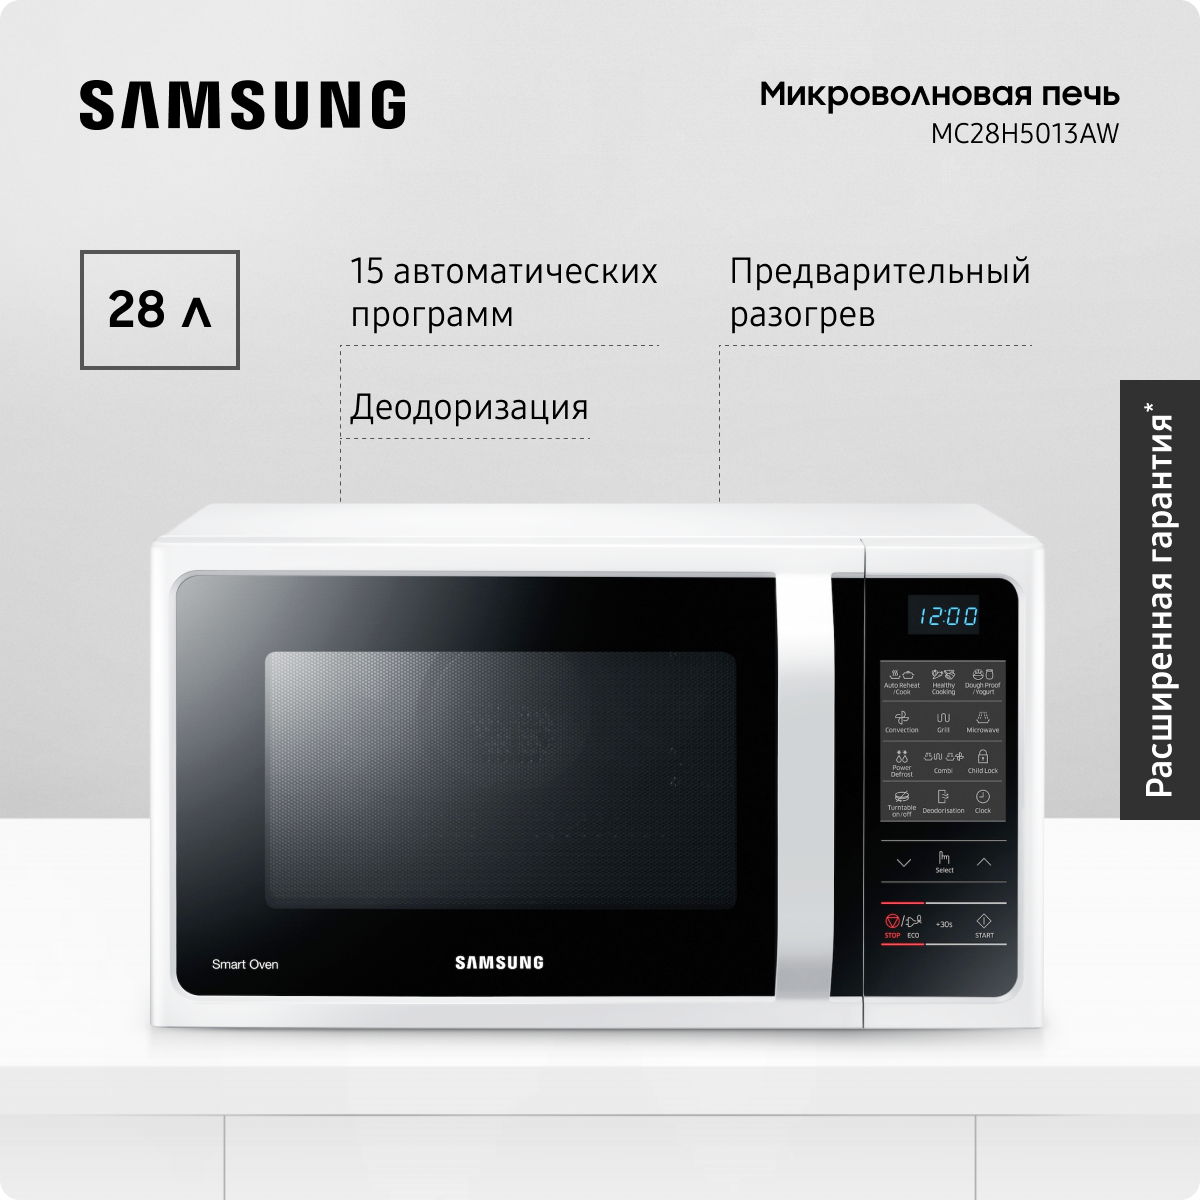 Микроволновая печь Samsung MC28H5013AW, 28 л, с конвекцией, 15 автоматическими программами, LED-дисплеем и функцией удаления запахов